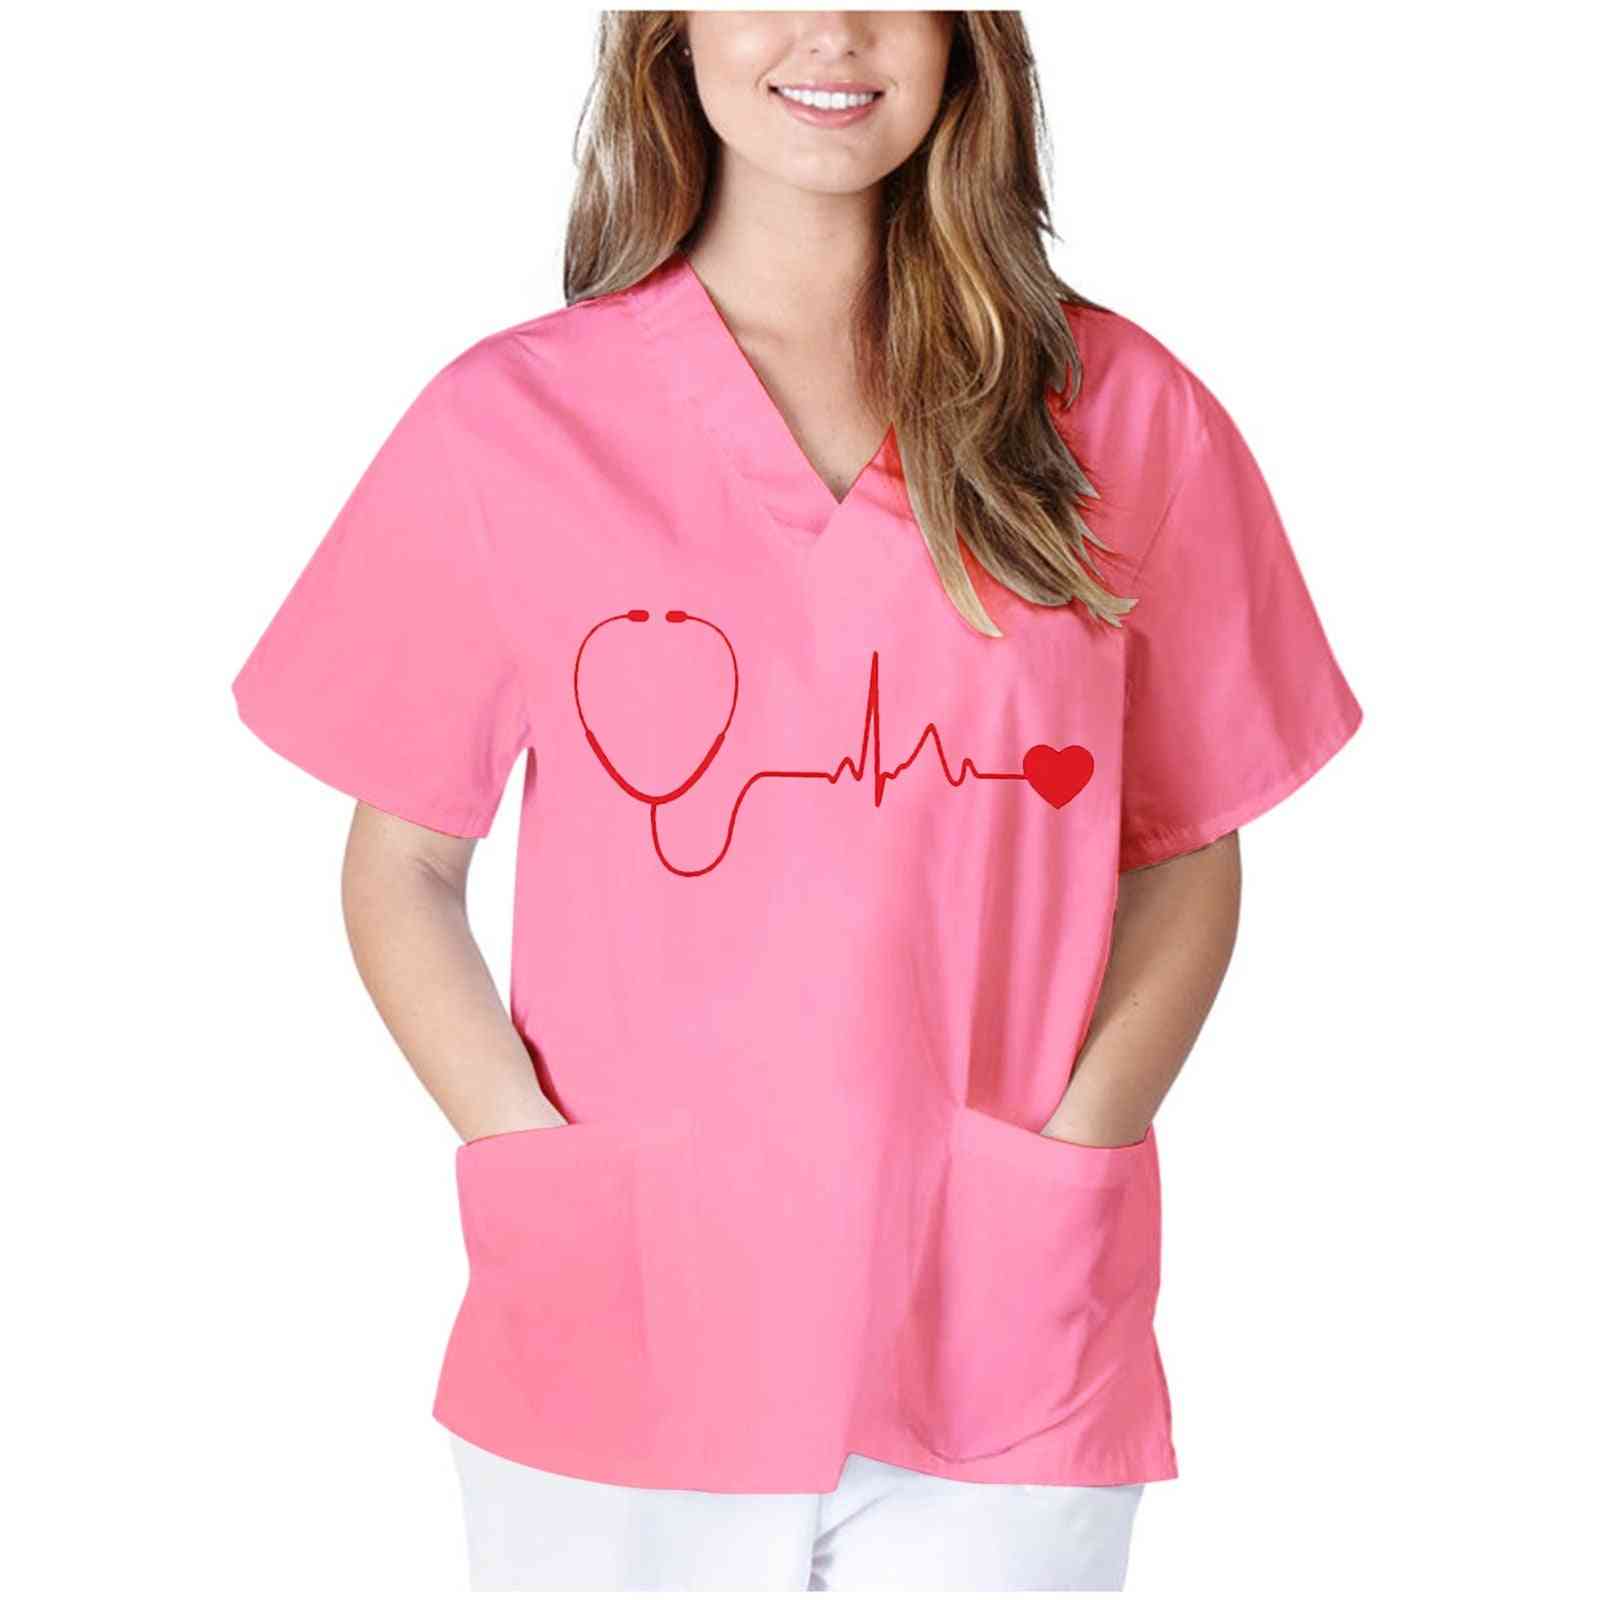 Kvinder skjorter toppe korte ærmer v-hals toppe sygeplejerske arbejder uniform